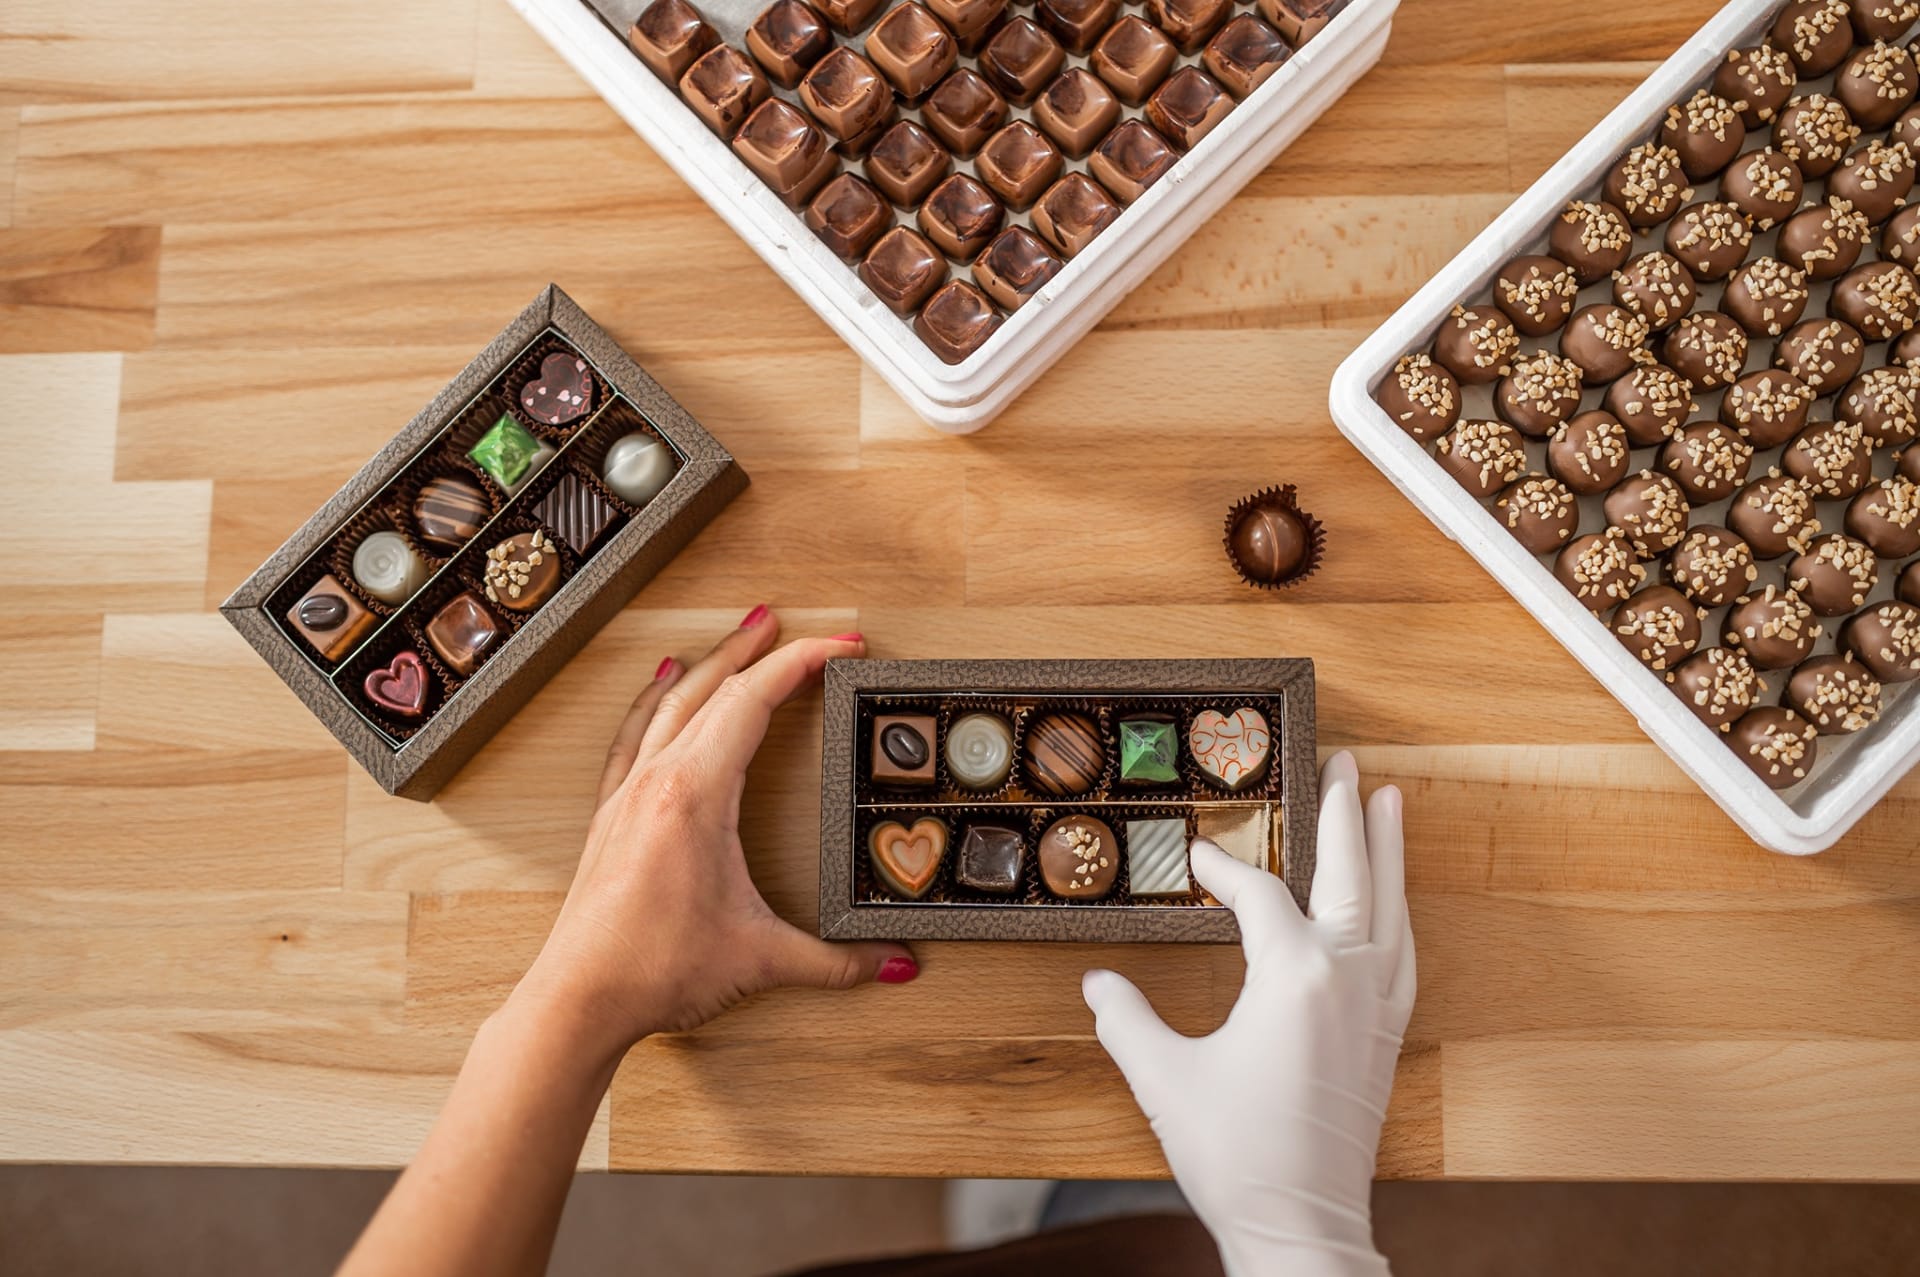 Vyhrajte sladký balíček od Čokoládovny Janek v hodnotě 1000 Kč